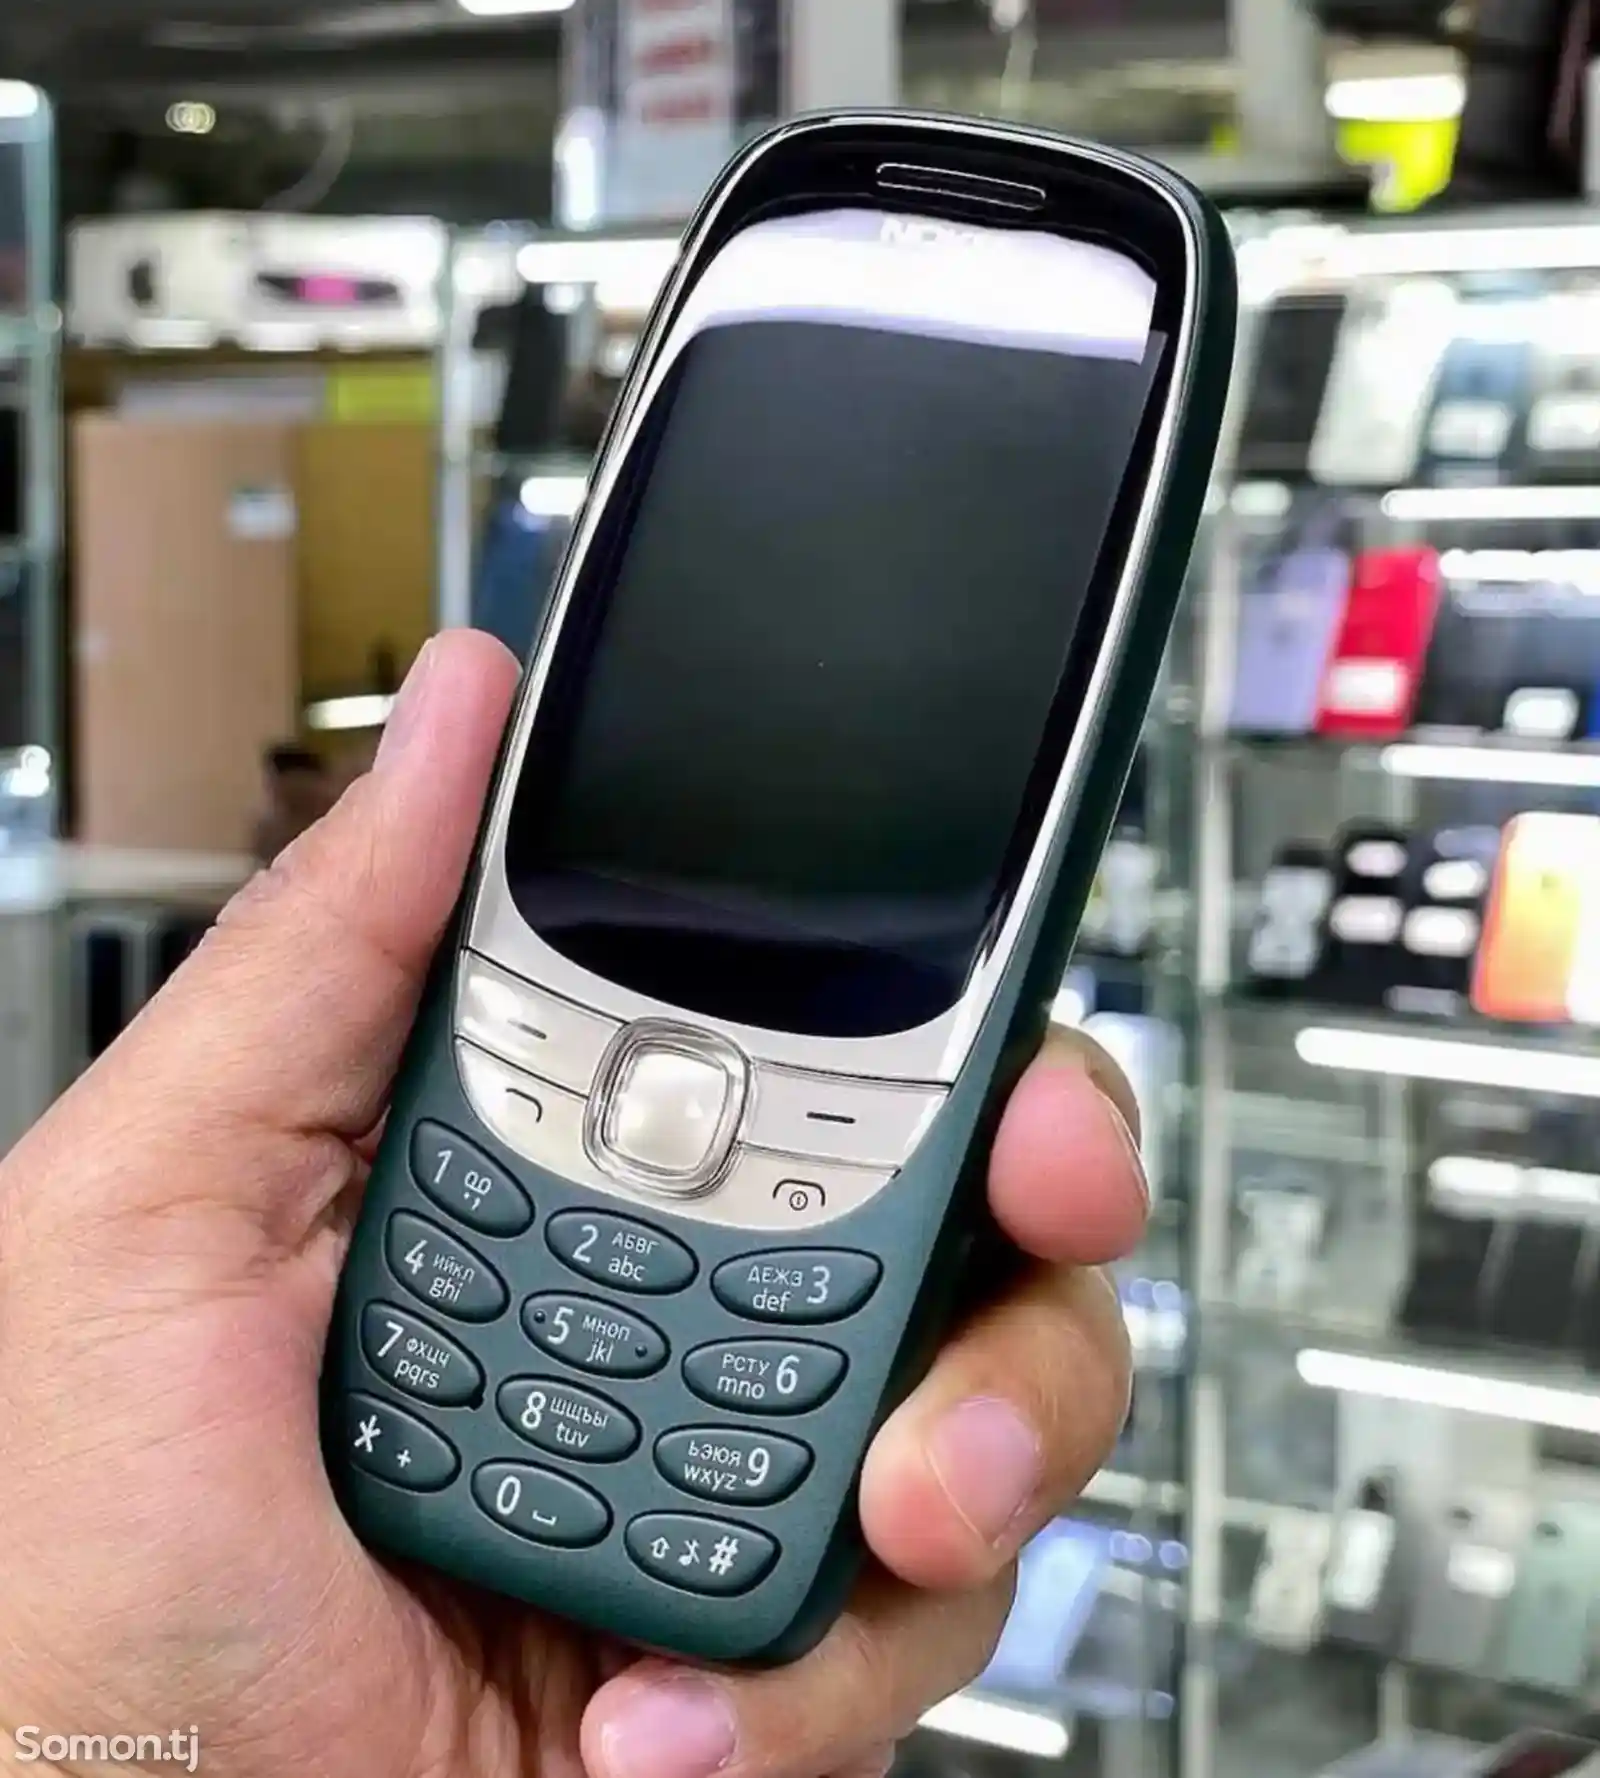 Nokia 6310-1